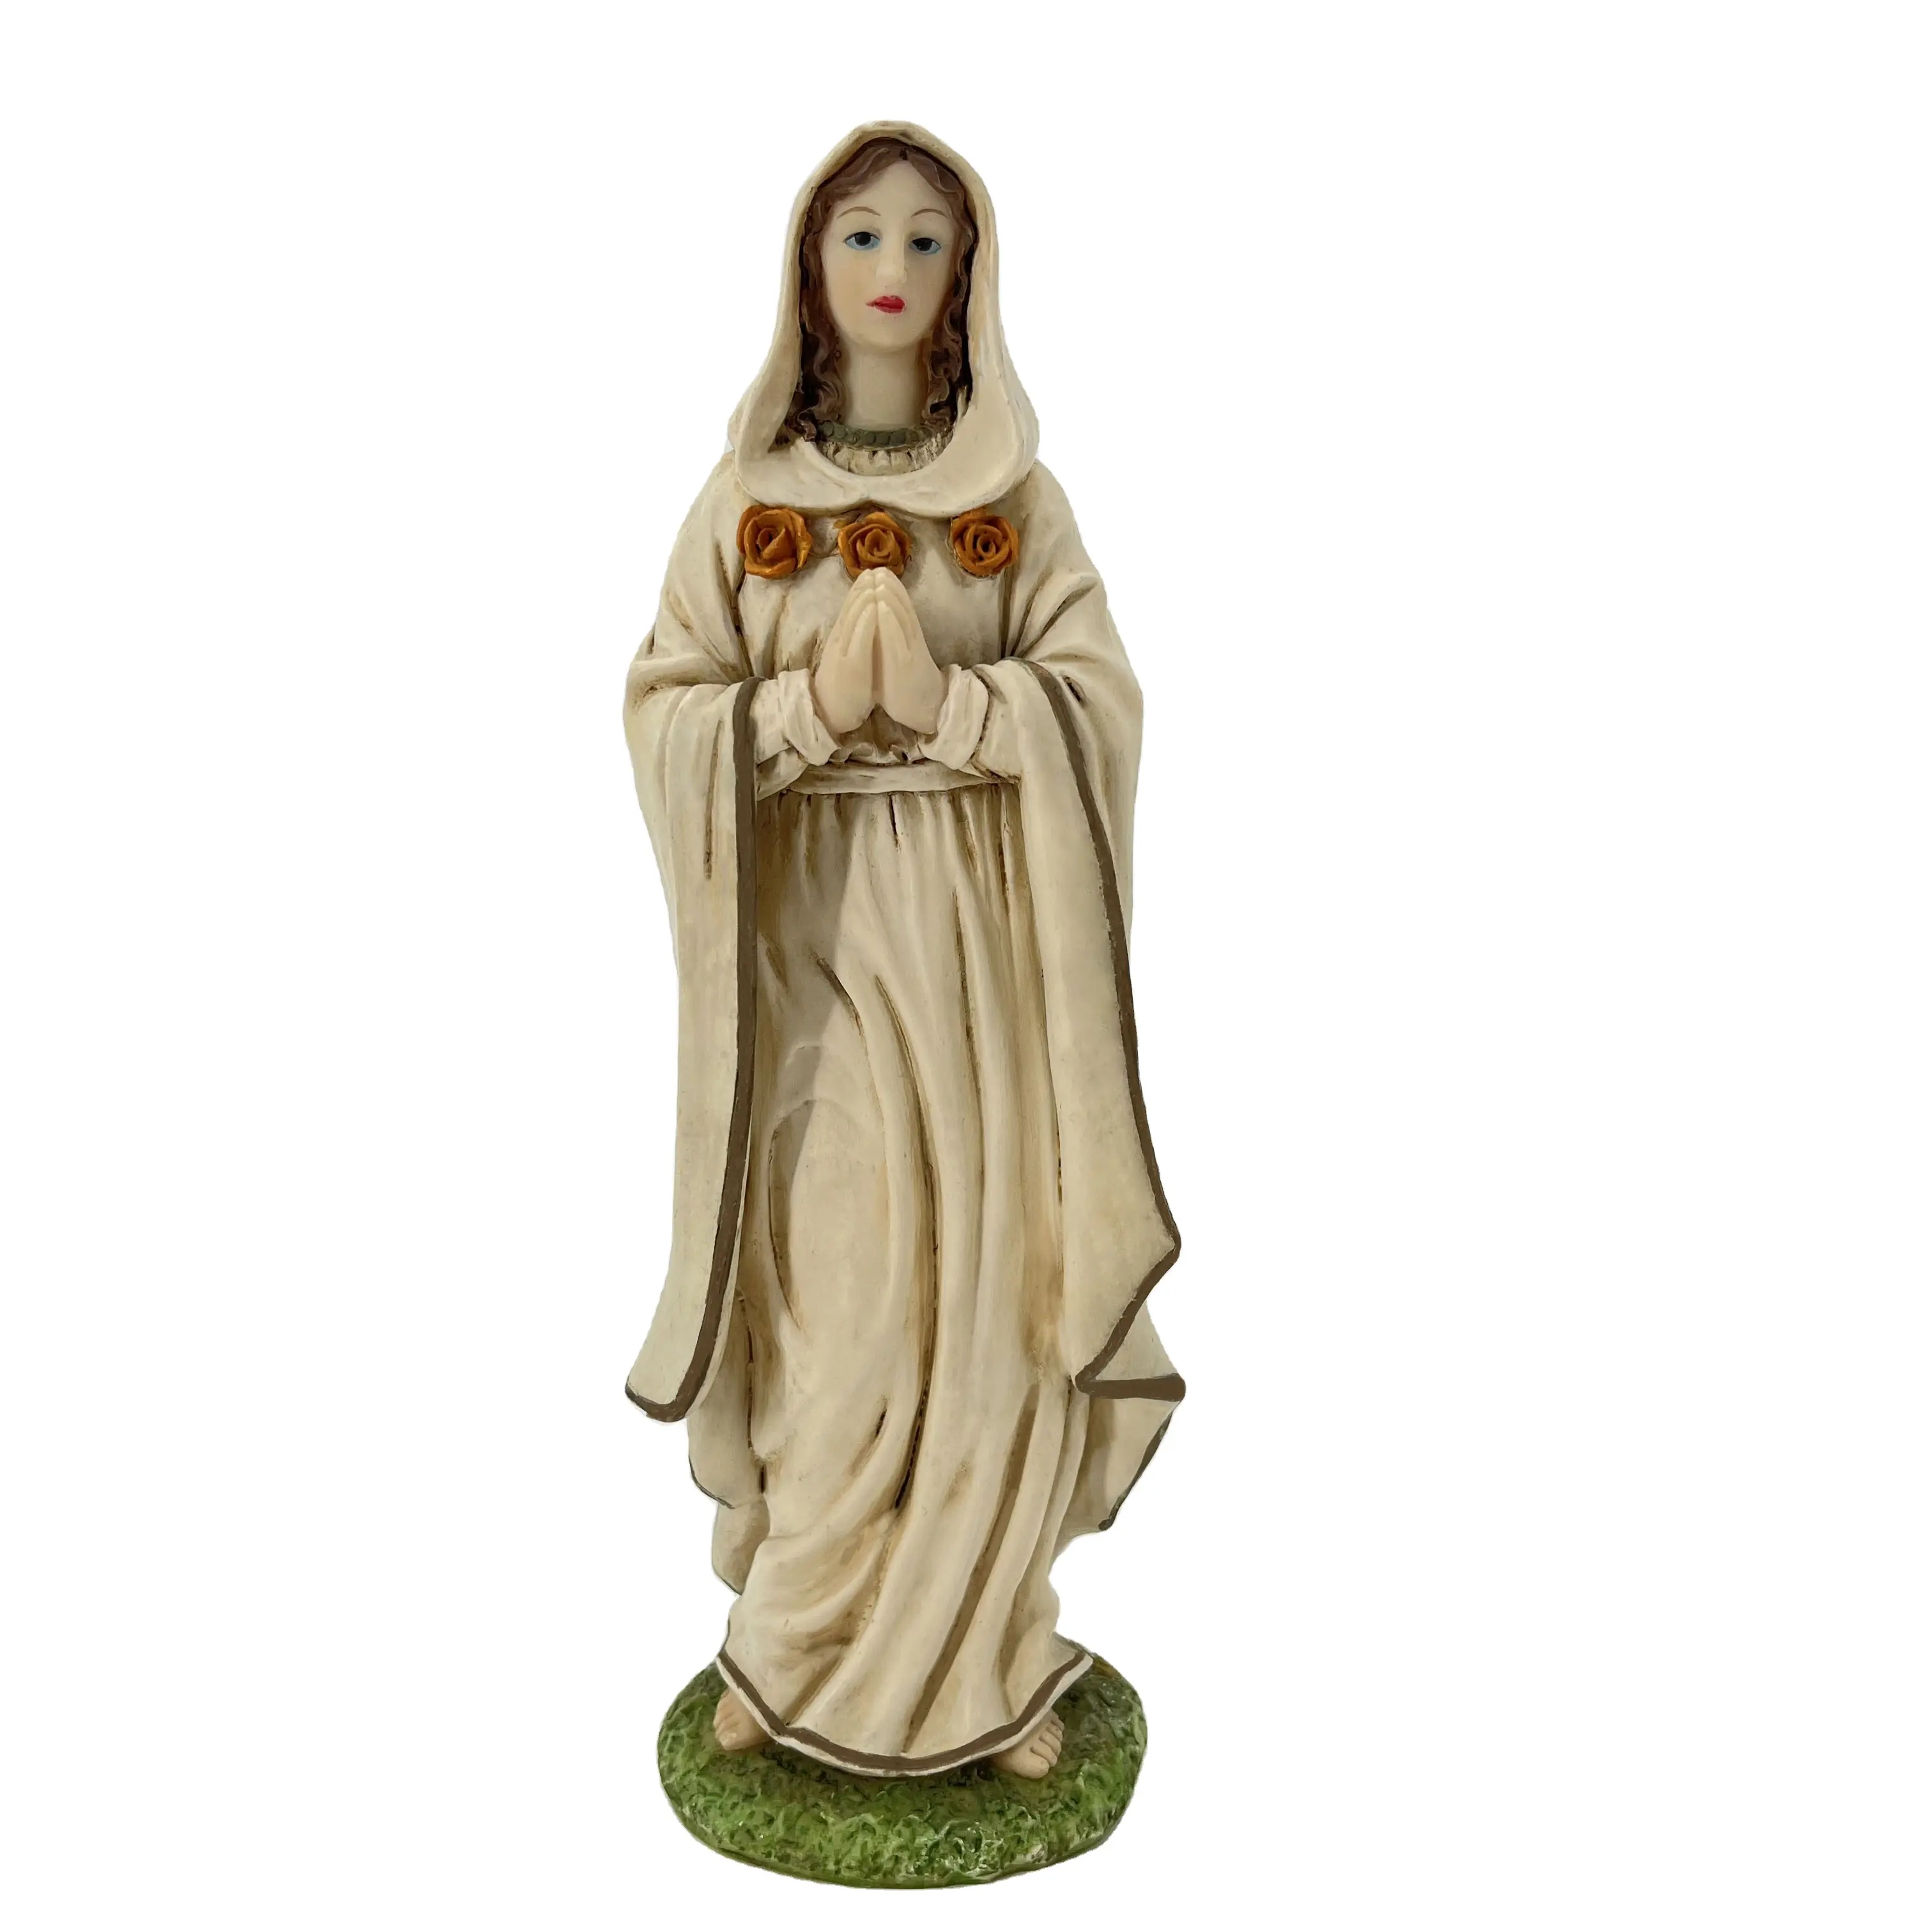 Artigianato in resina bellissimo ornamento Maria vergine Maria statuetta statue religiose decorazione per la casa europa gesus Figurine XIAMEN cina